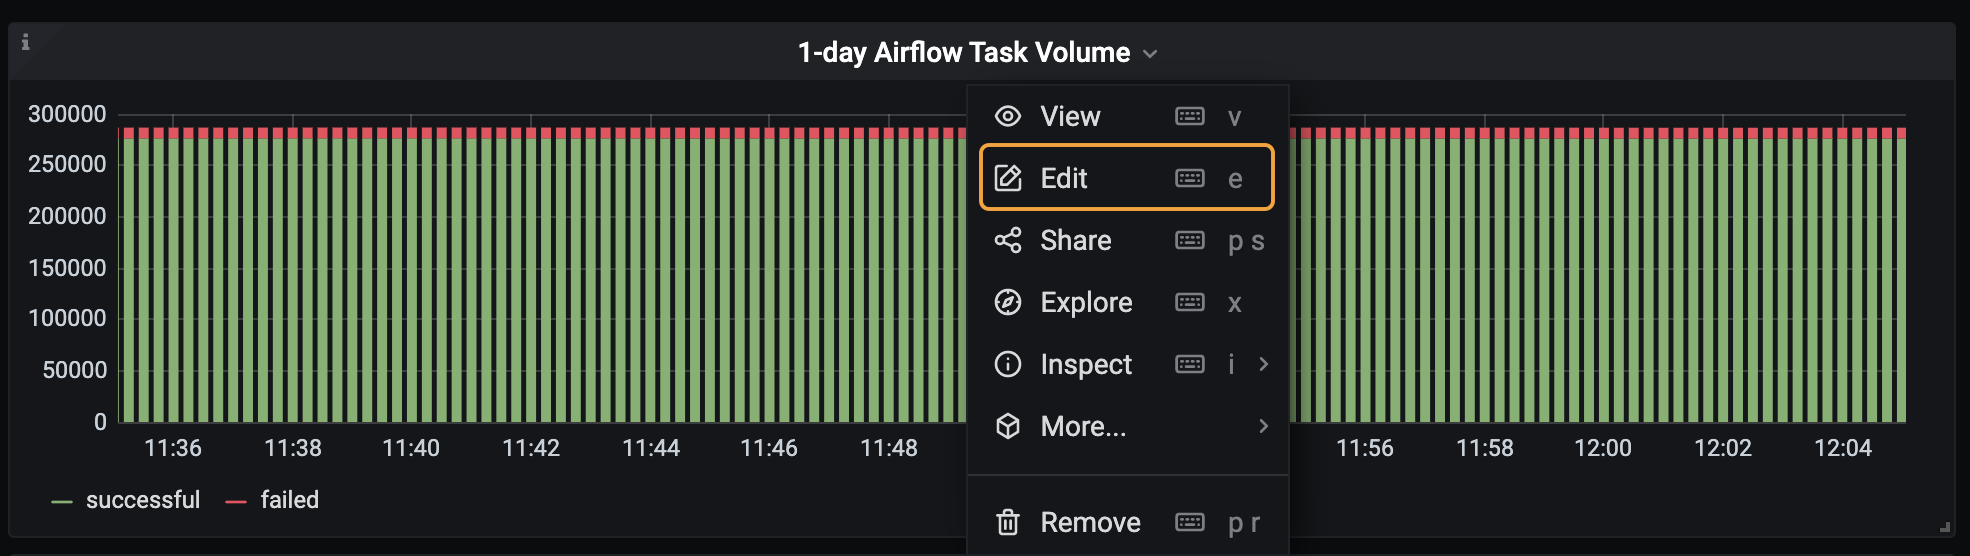 1-day Airflow Task Volume Metric